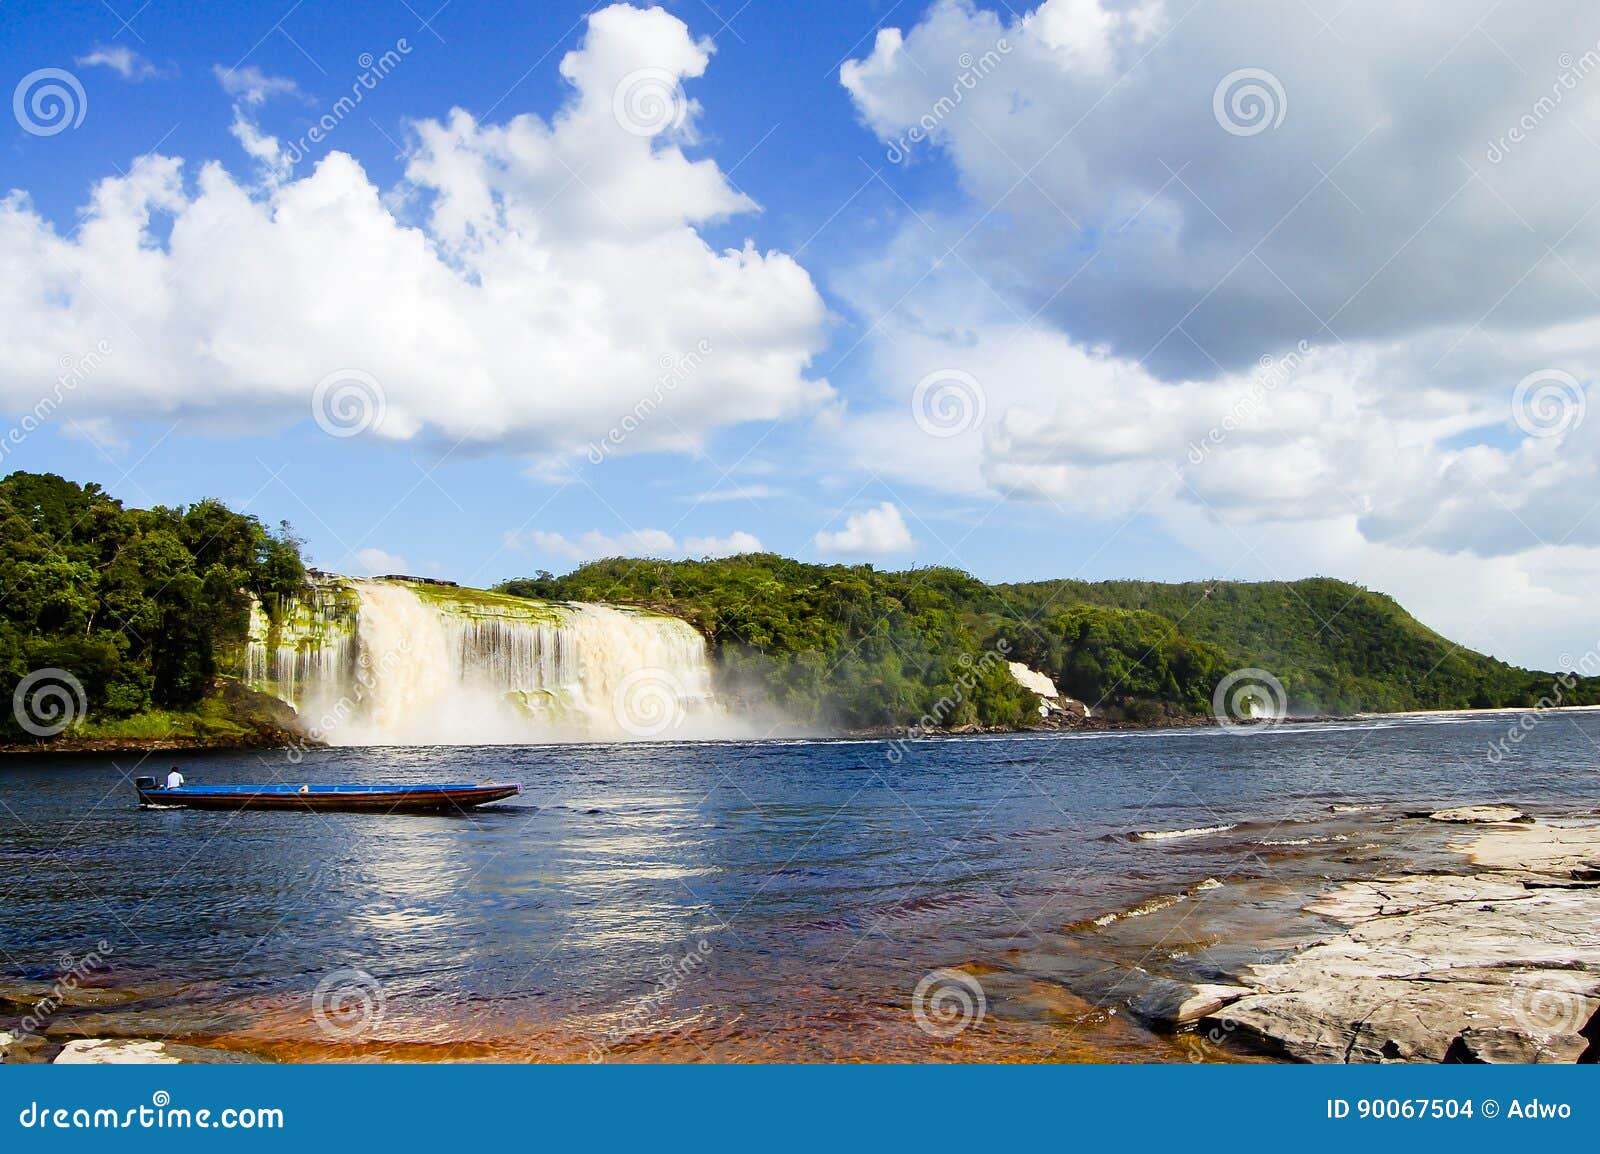 hacha waterfall - venezuela